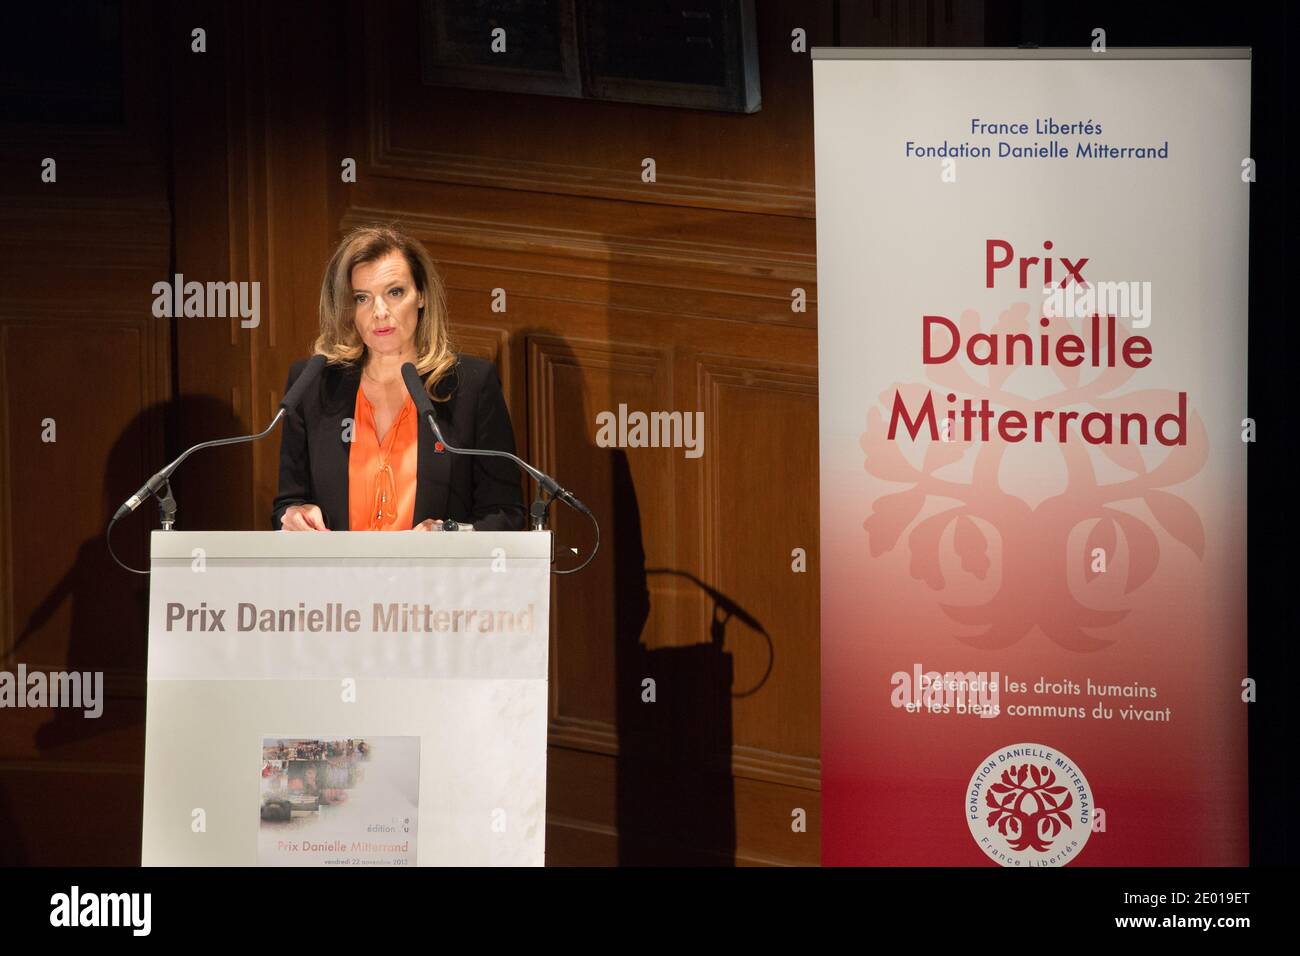 Valerie Trierweiler ha raffigurato di parlare durante la cerimonia 'Prix Danielle Mitterrand 2013', il 22 novembre 2013, a Parigi, Francia. Foto di Romain boe/ABACAPRESS.COM Foto Stock